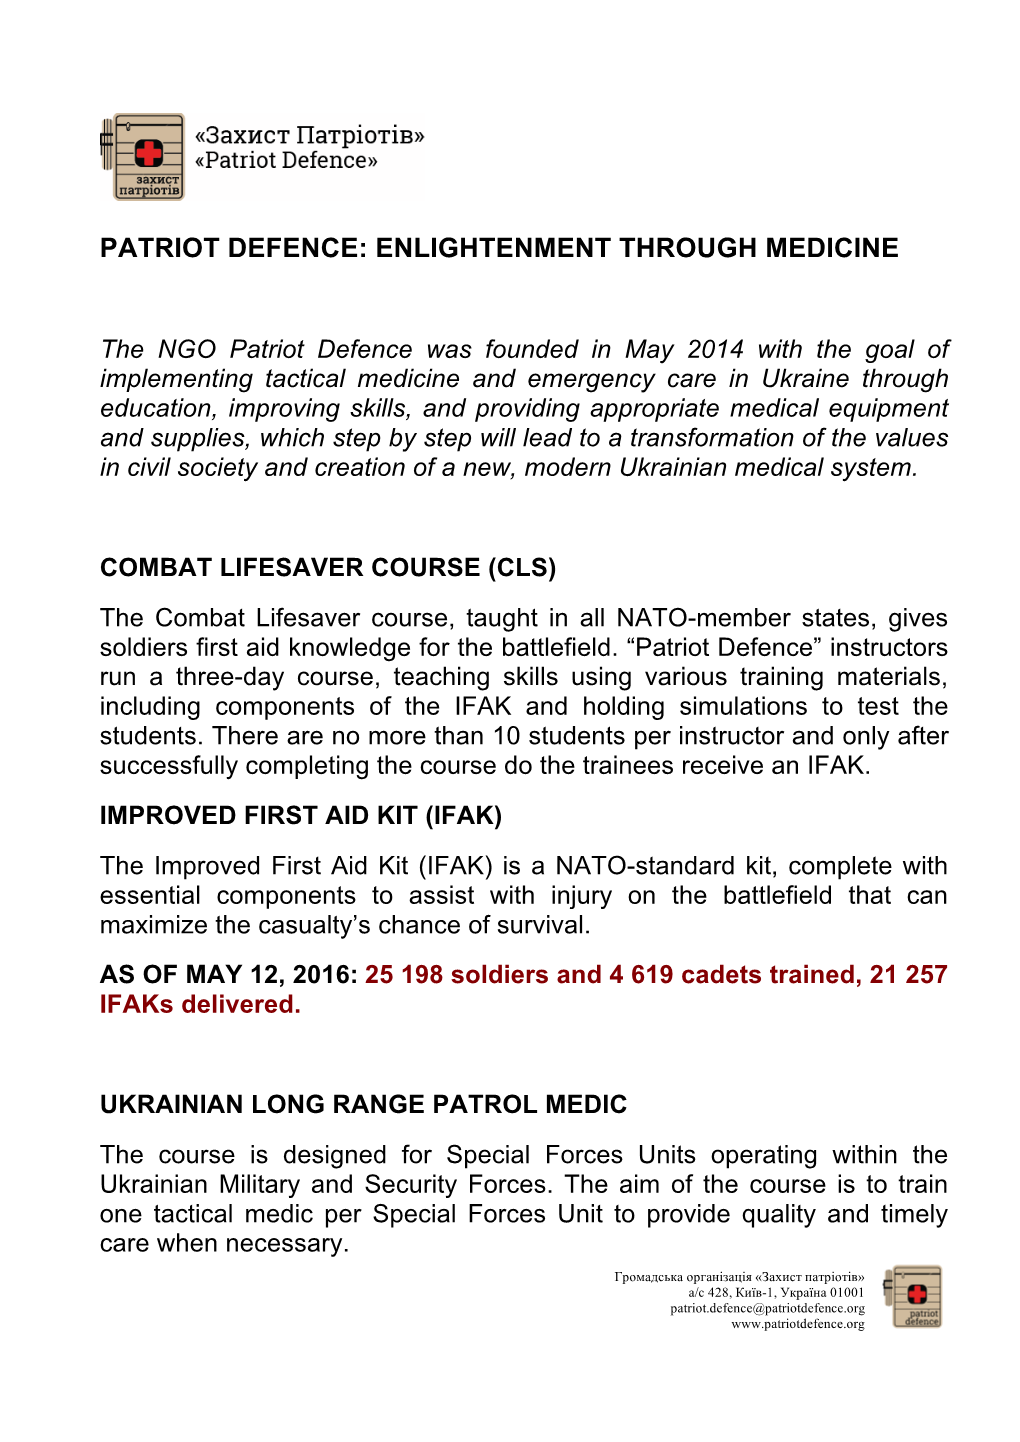 Patriot Defence: Enlightenment Through Medicine